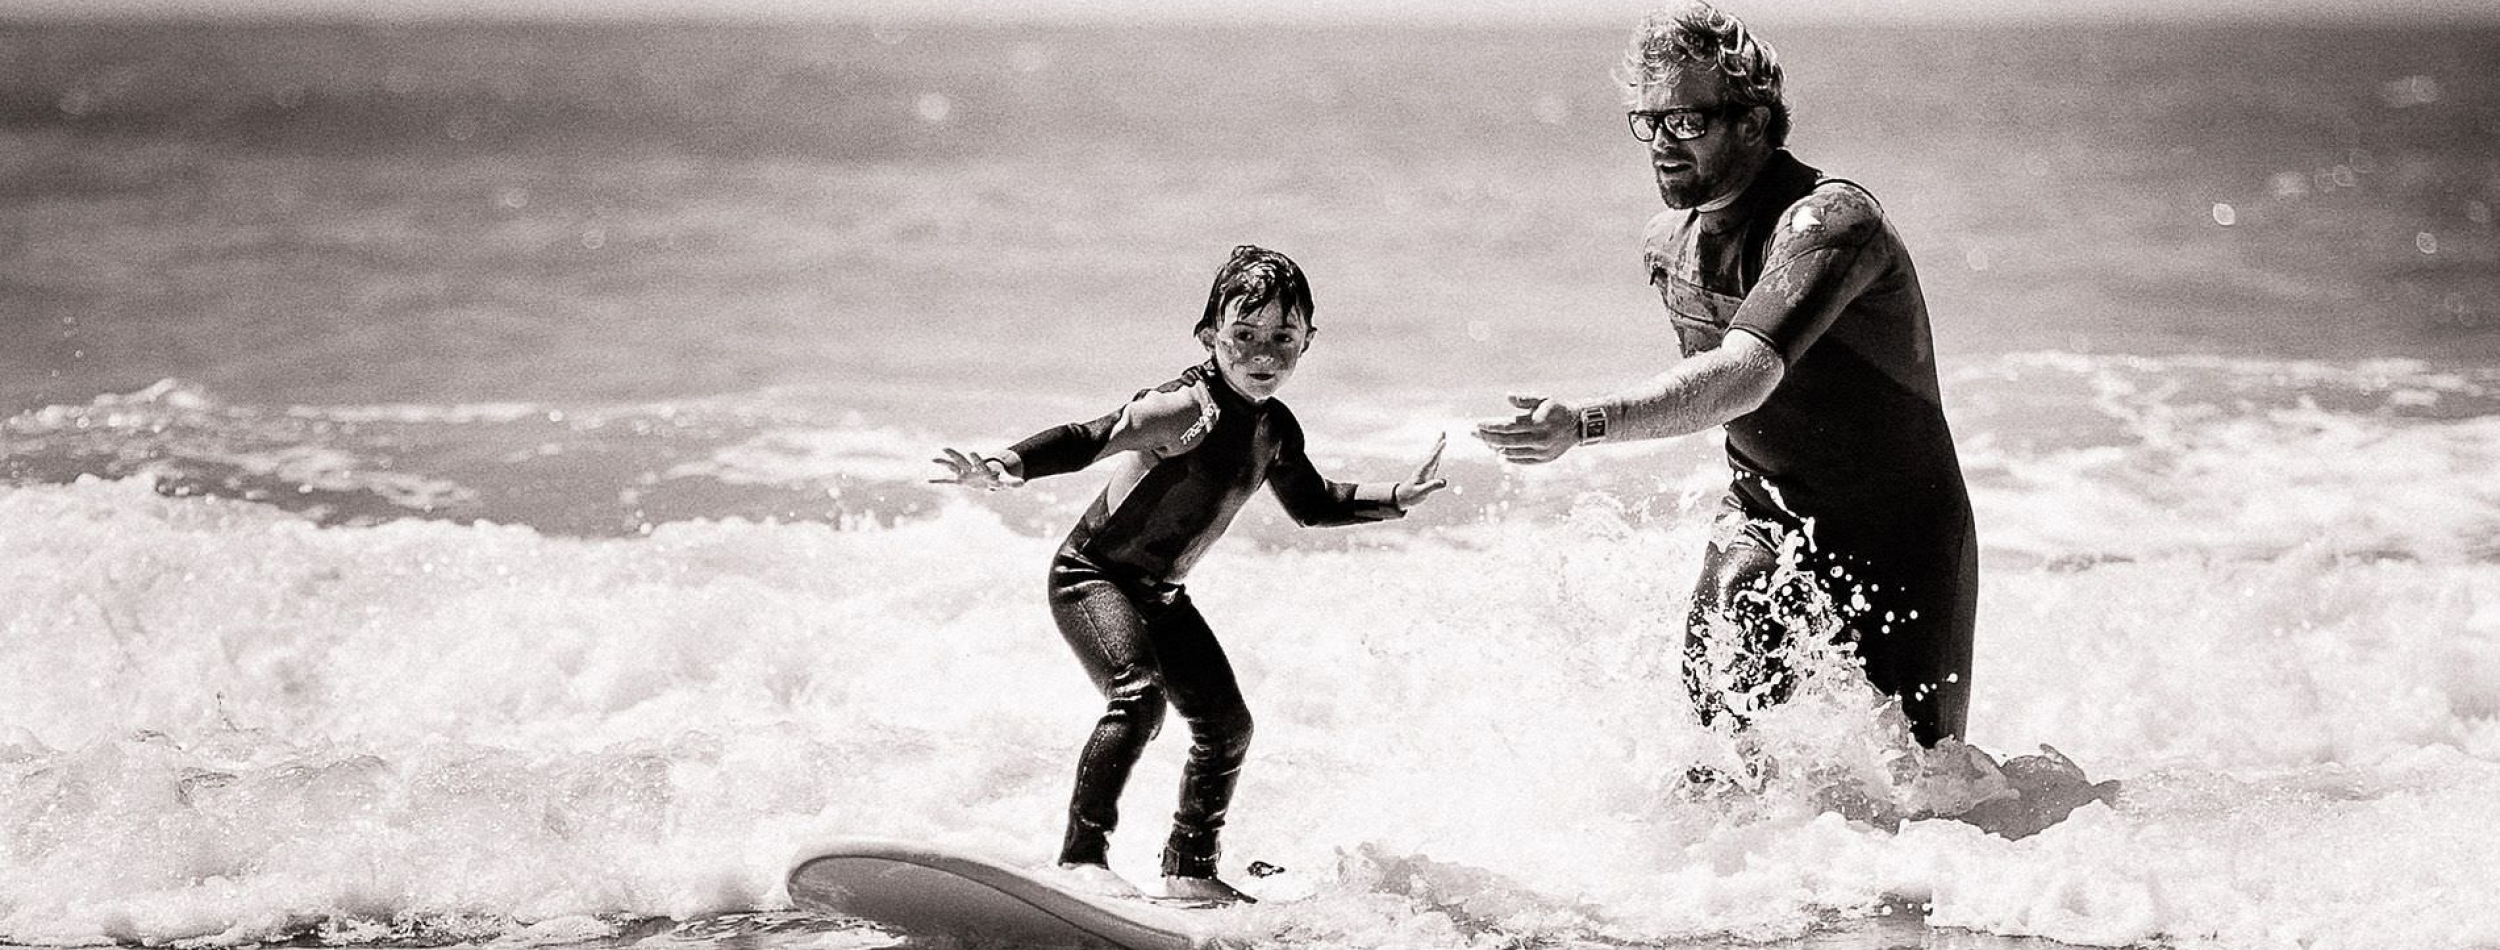 Pierro surfeur Anglet cours enfant